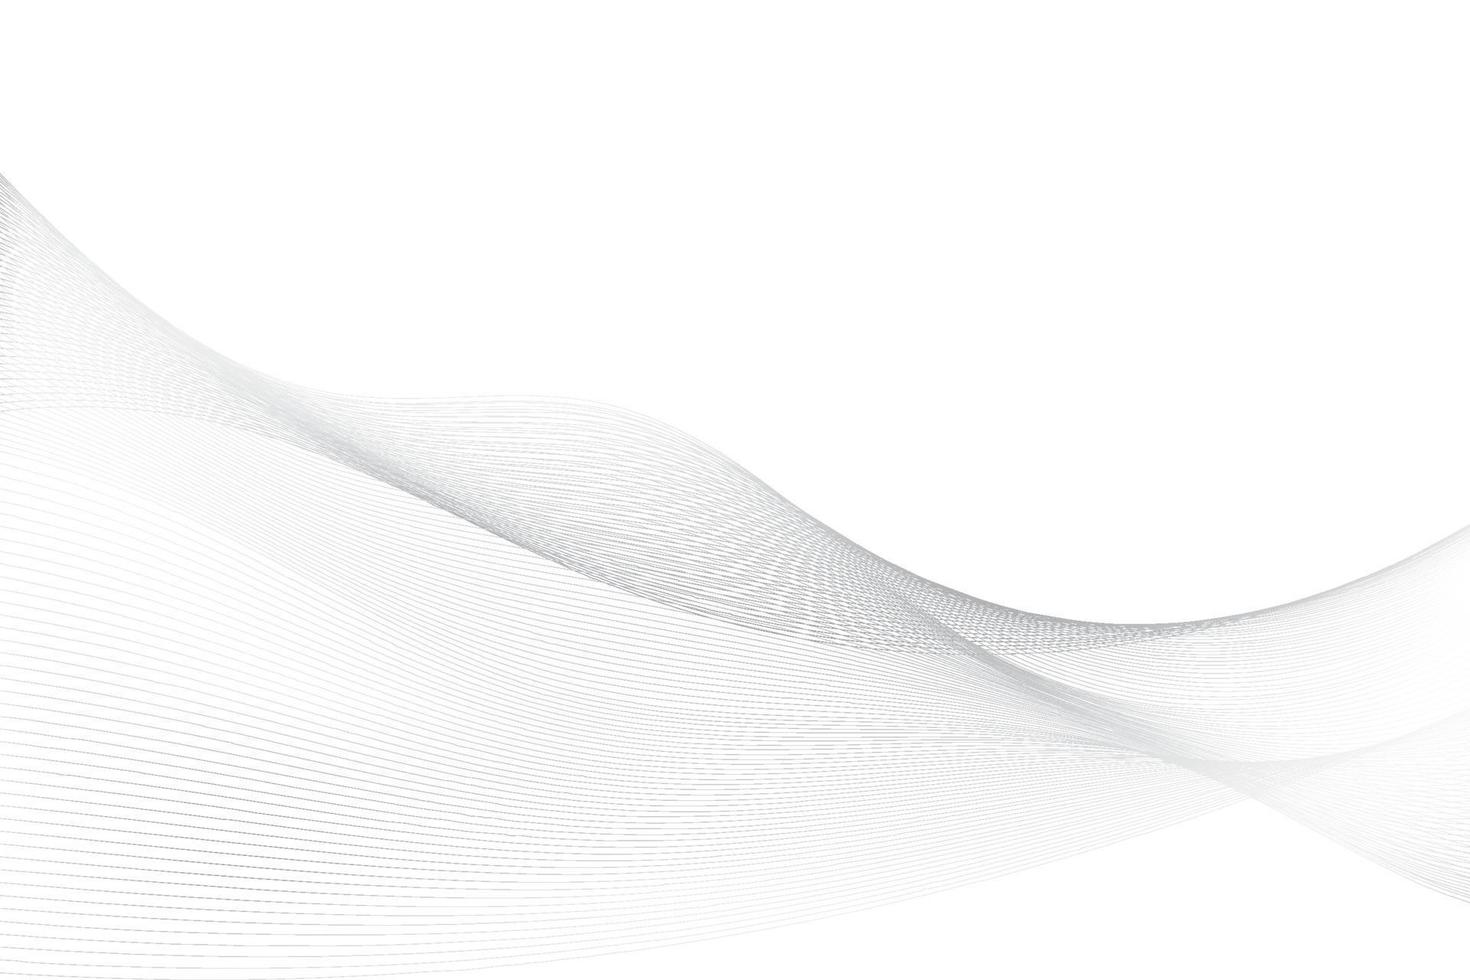 astratto bianca e grigio colore, moderno design strisce sfondo con onda elemento. vettore illustrazione.